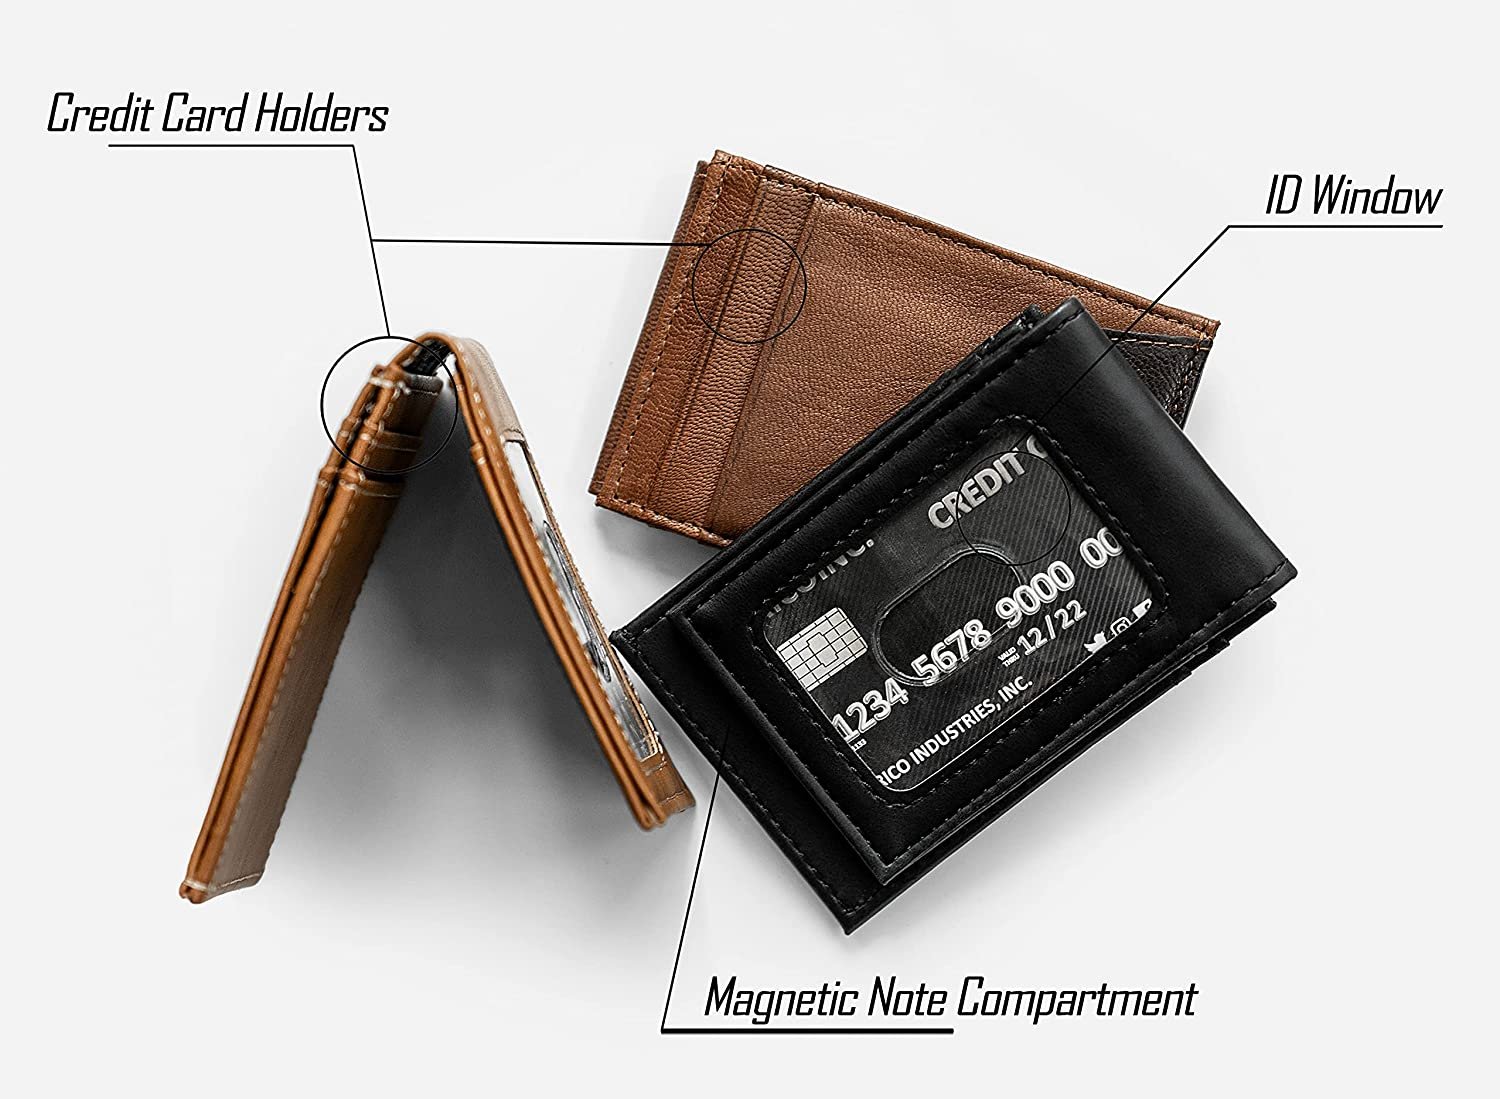 New York Islanders Premium Black Leather Wallet, Front Pocket Magnetic Money Clip, Laser Engraved, Vegan